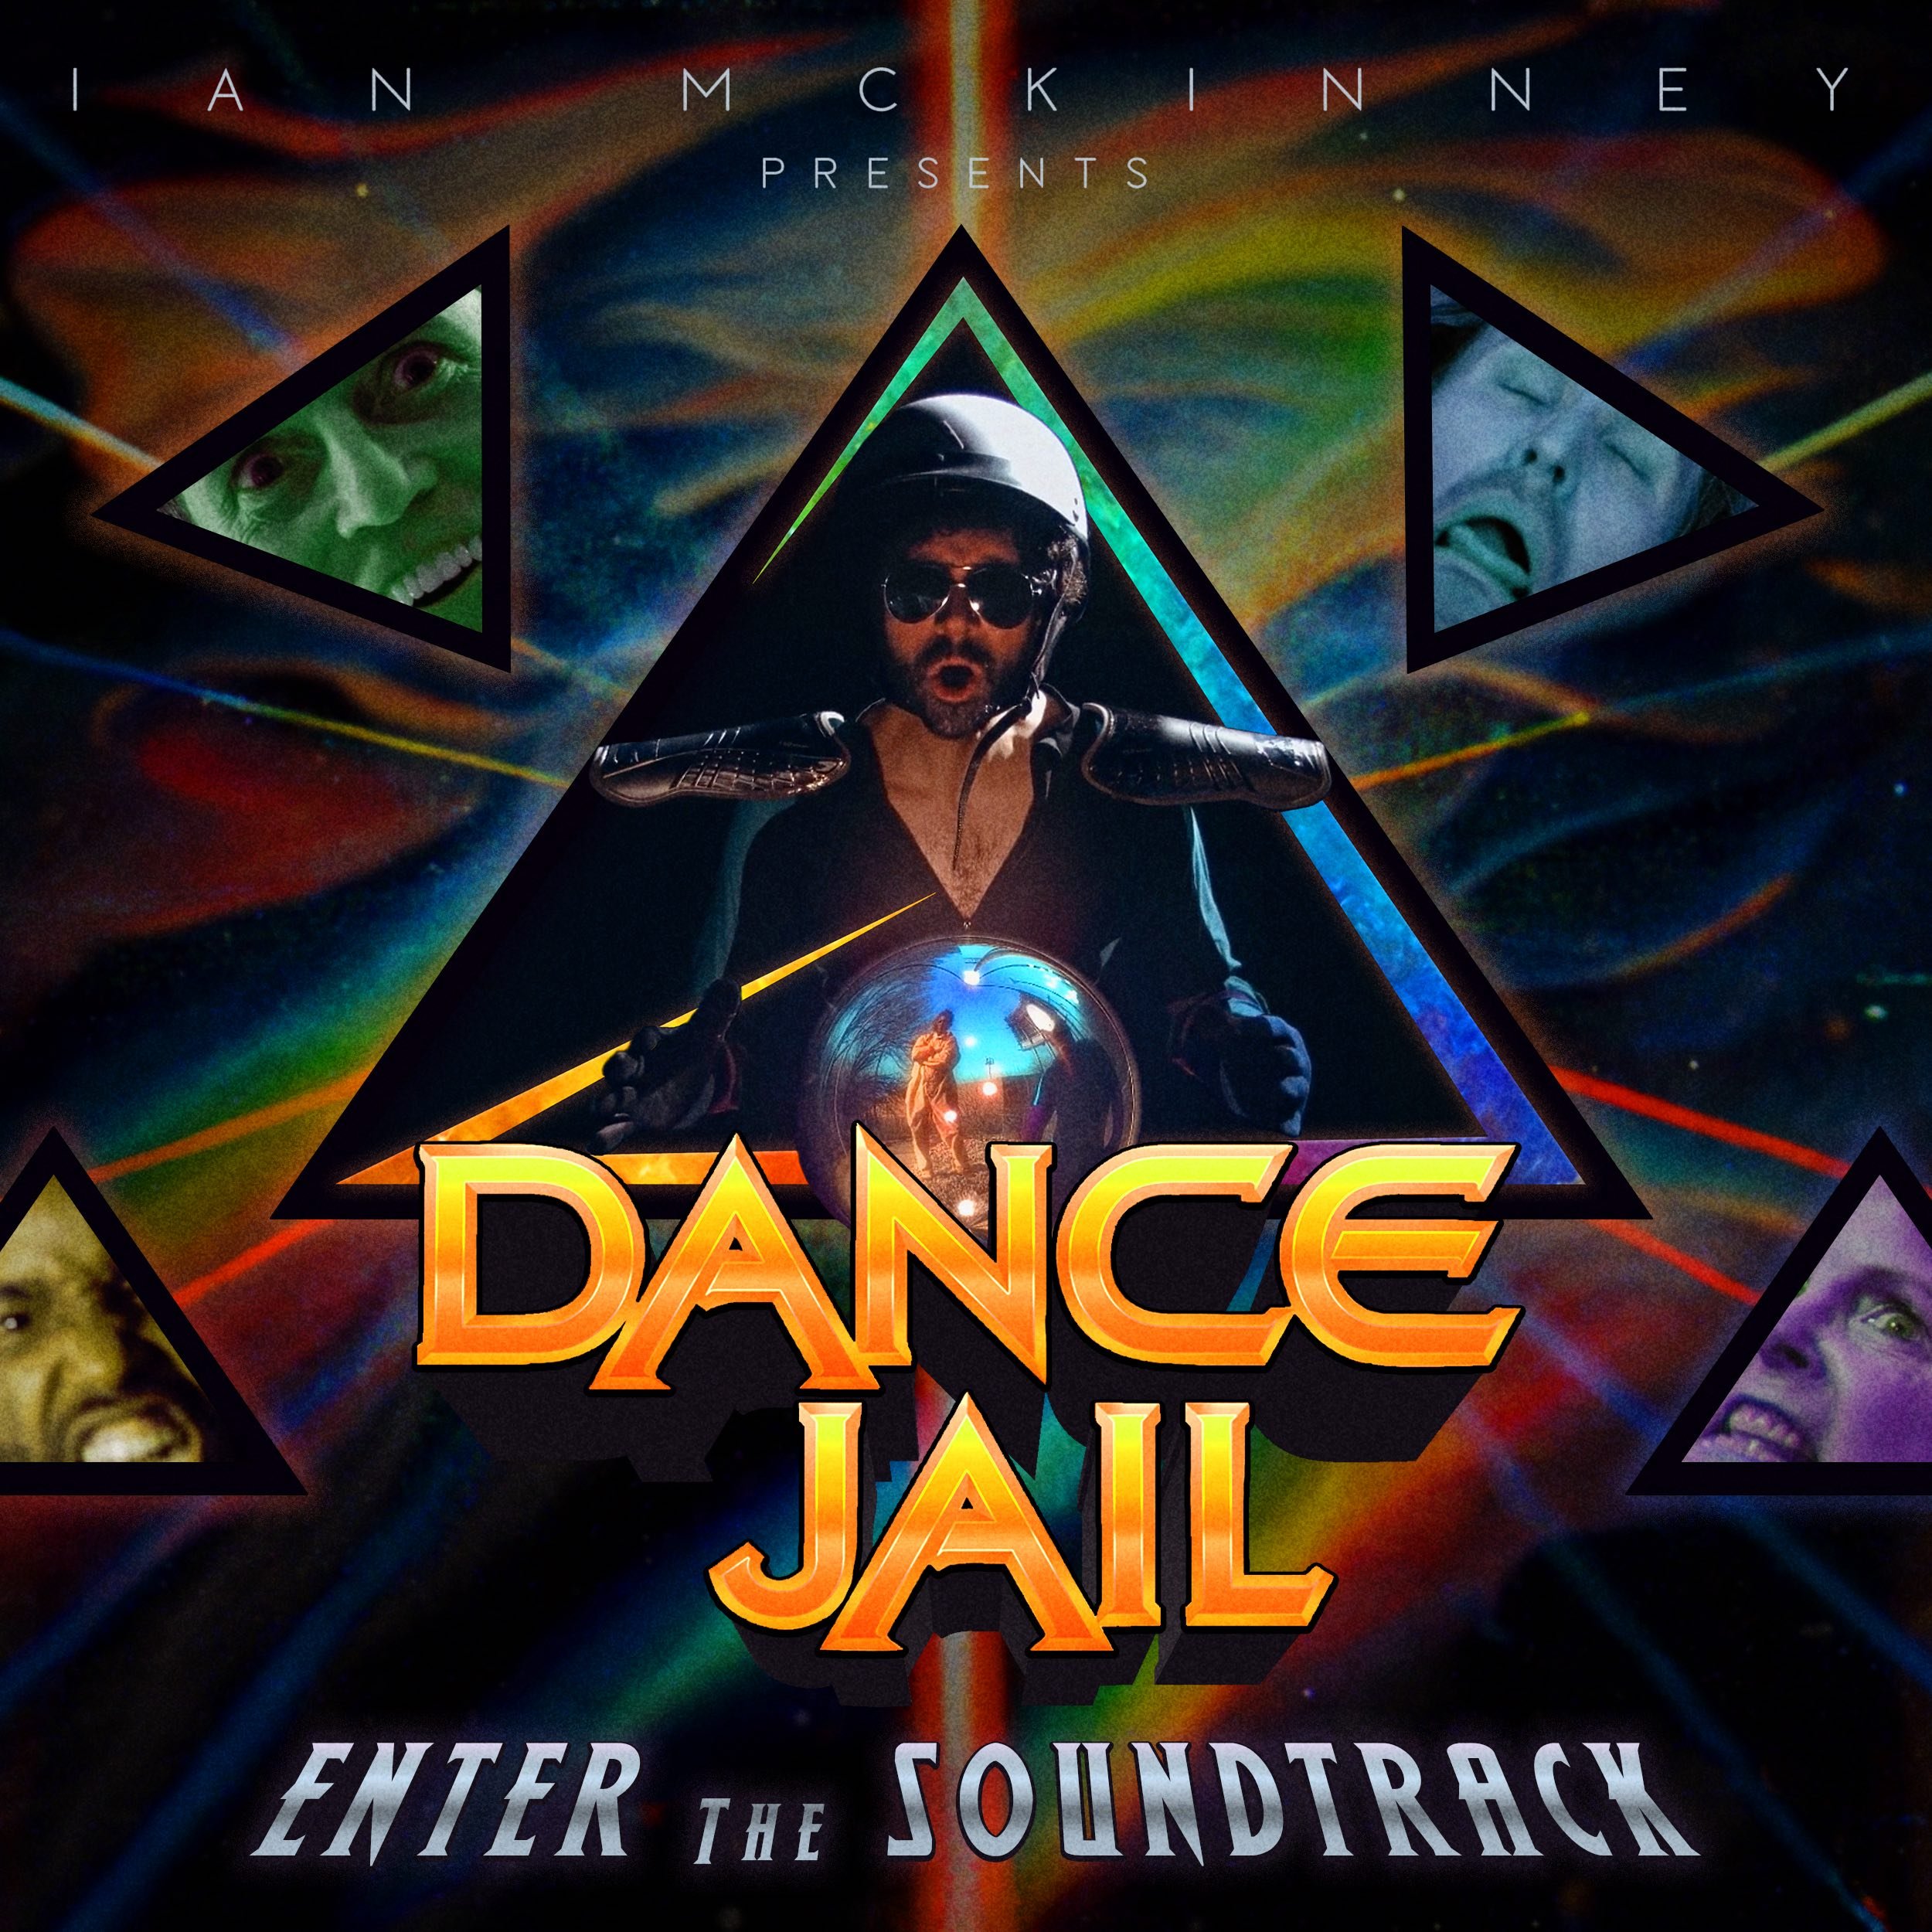 "Dance Jail: Enter the Soundtrack" Album Cover